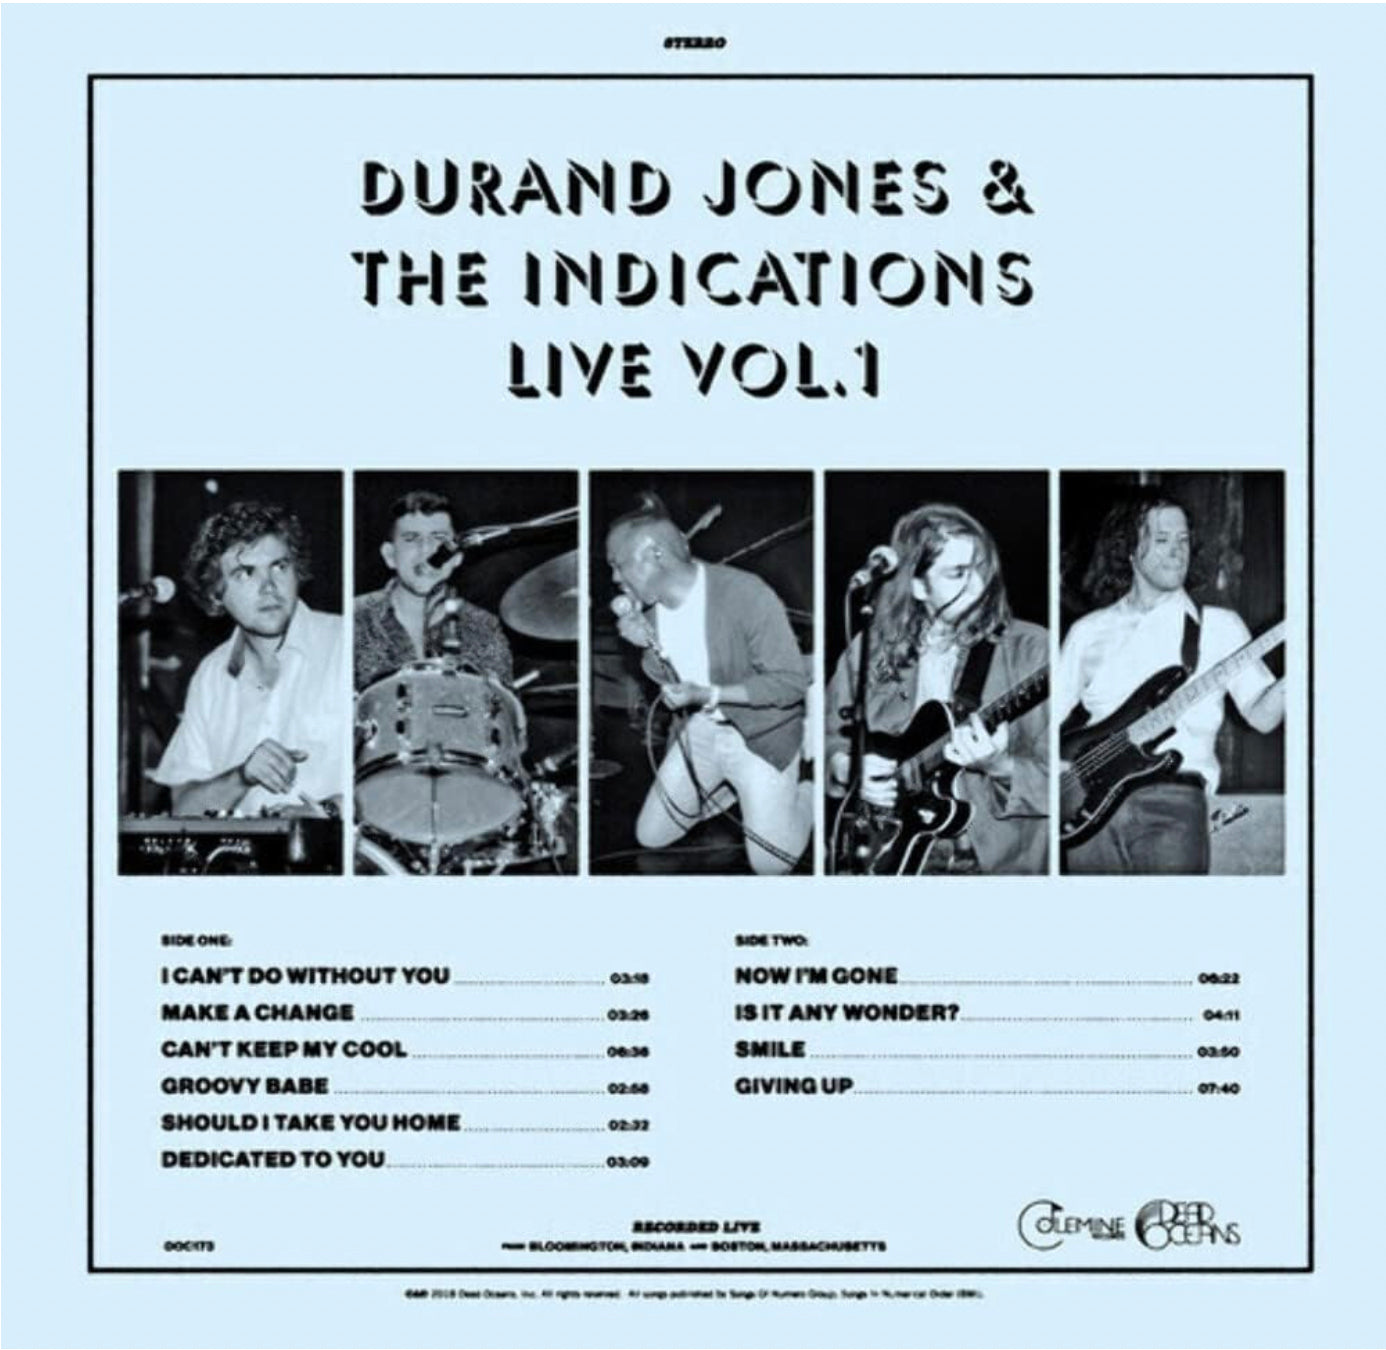 DURAND JONES & THE INDICATIONS 'LIVE VOL. 1'